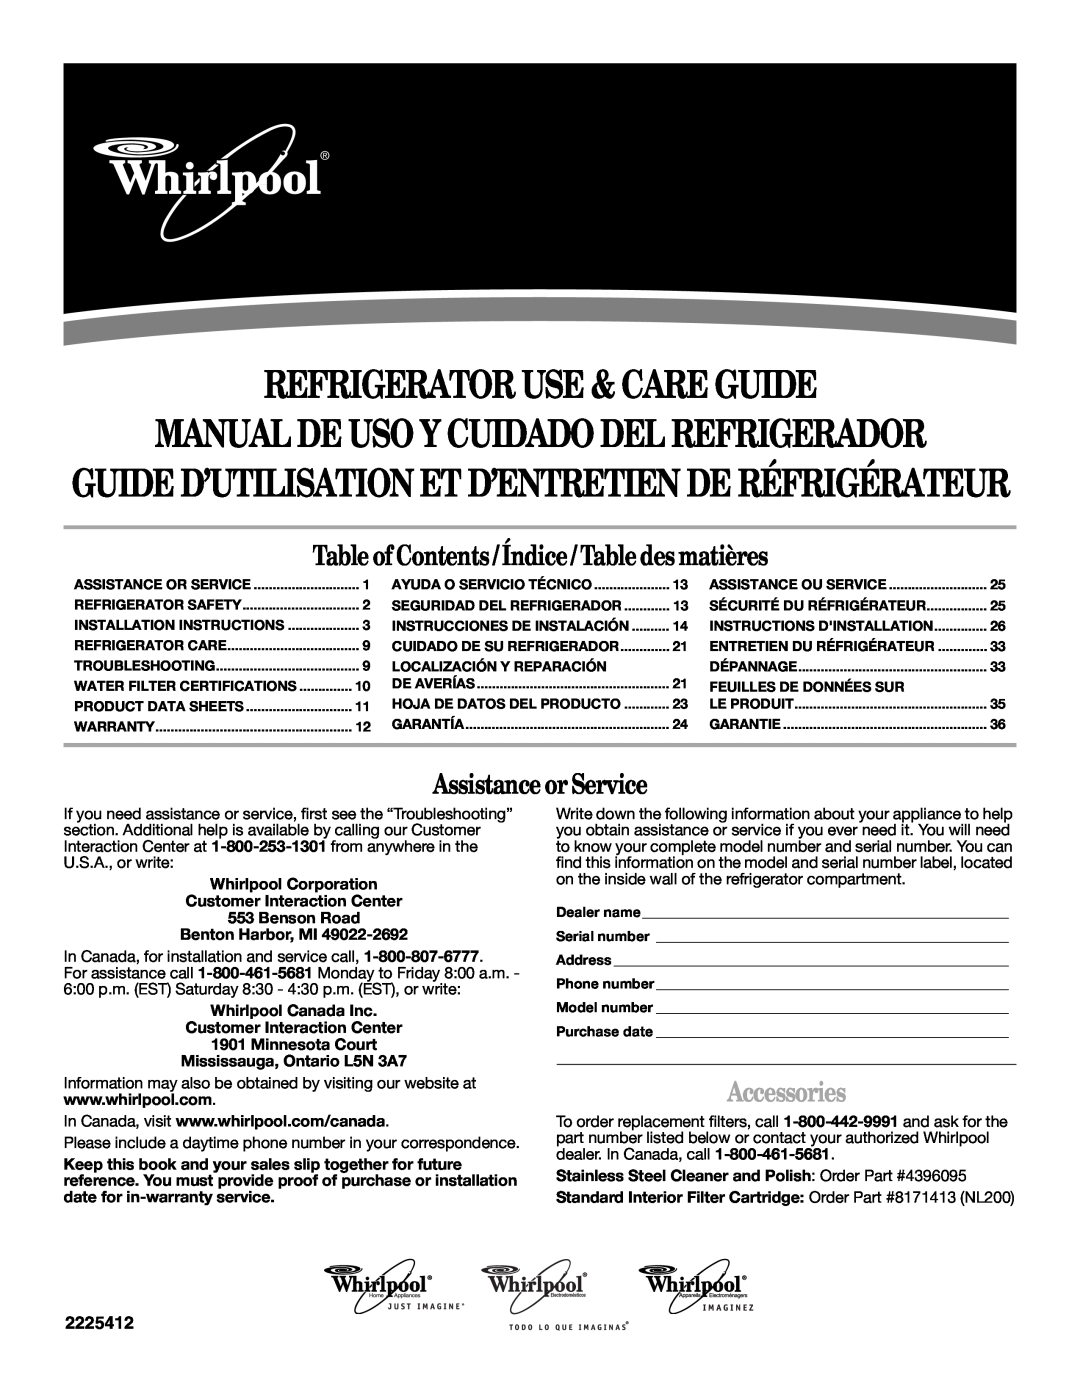 Whirlpool GR2SHTXKT00 warranty Refrigerator Use & Care Guide, Manual De Uso Y Cuidado Del Refrigerador, Accessories 